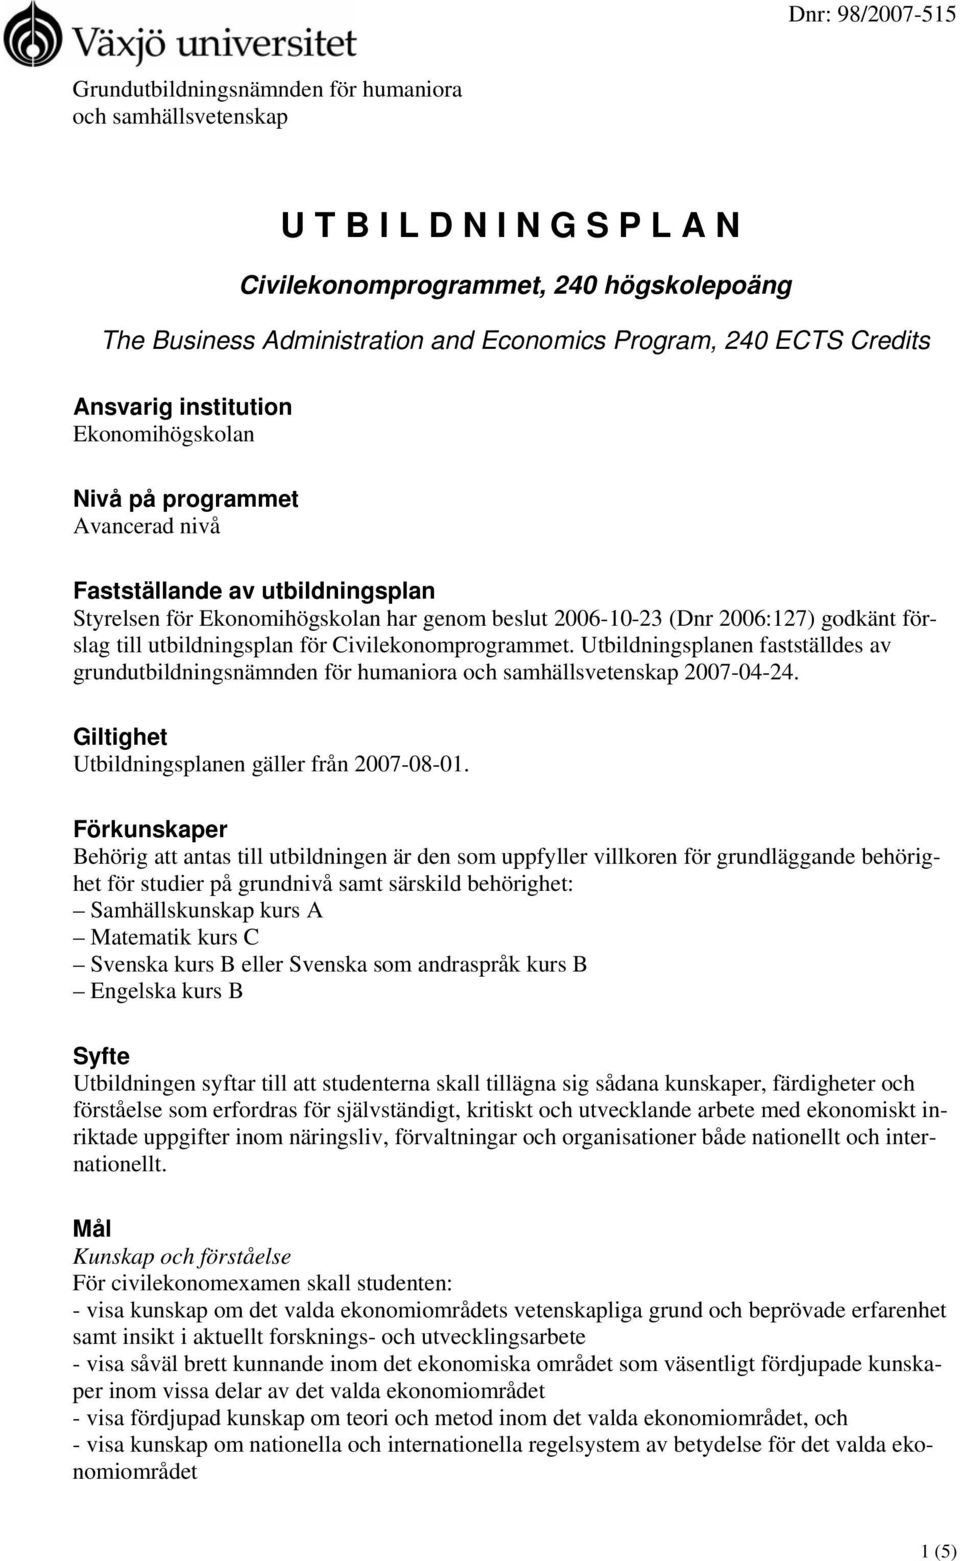 förslag till utbildningsplan för Civilekonomprogrammet. Utbildningsplanen fastställdes av grundutbildningsnämnden för humaniora och samhällsvetenskap 2007-04-24.